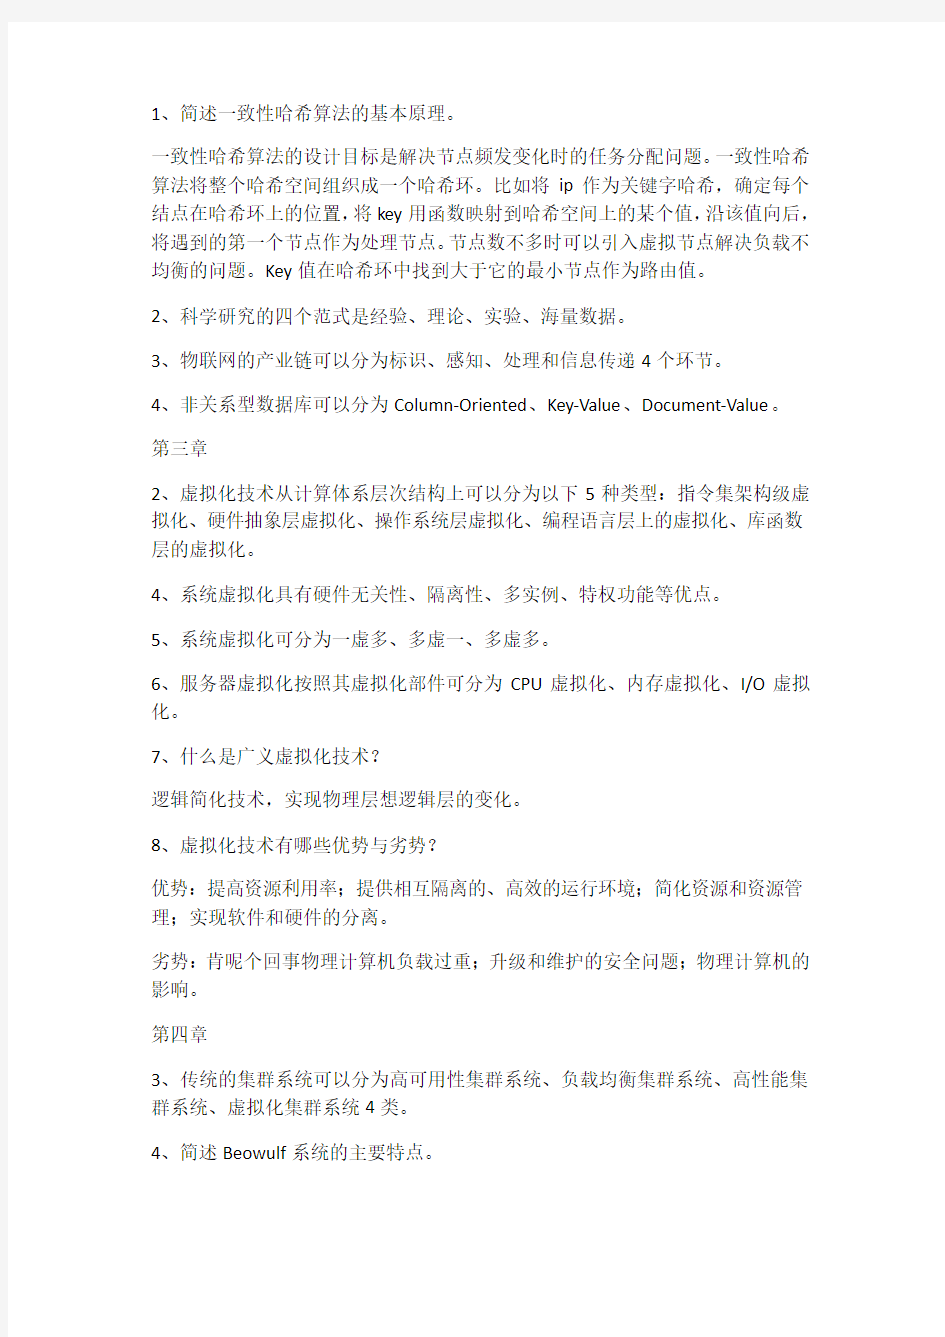 南京邮电大学云计算与大数据课后作业节选(附题干)